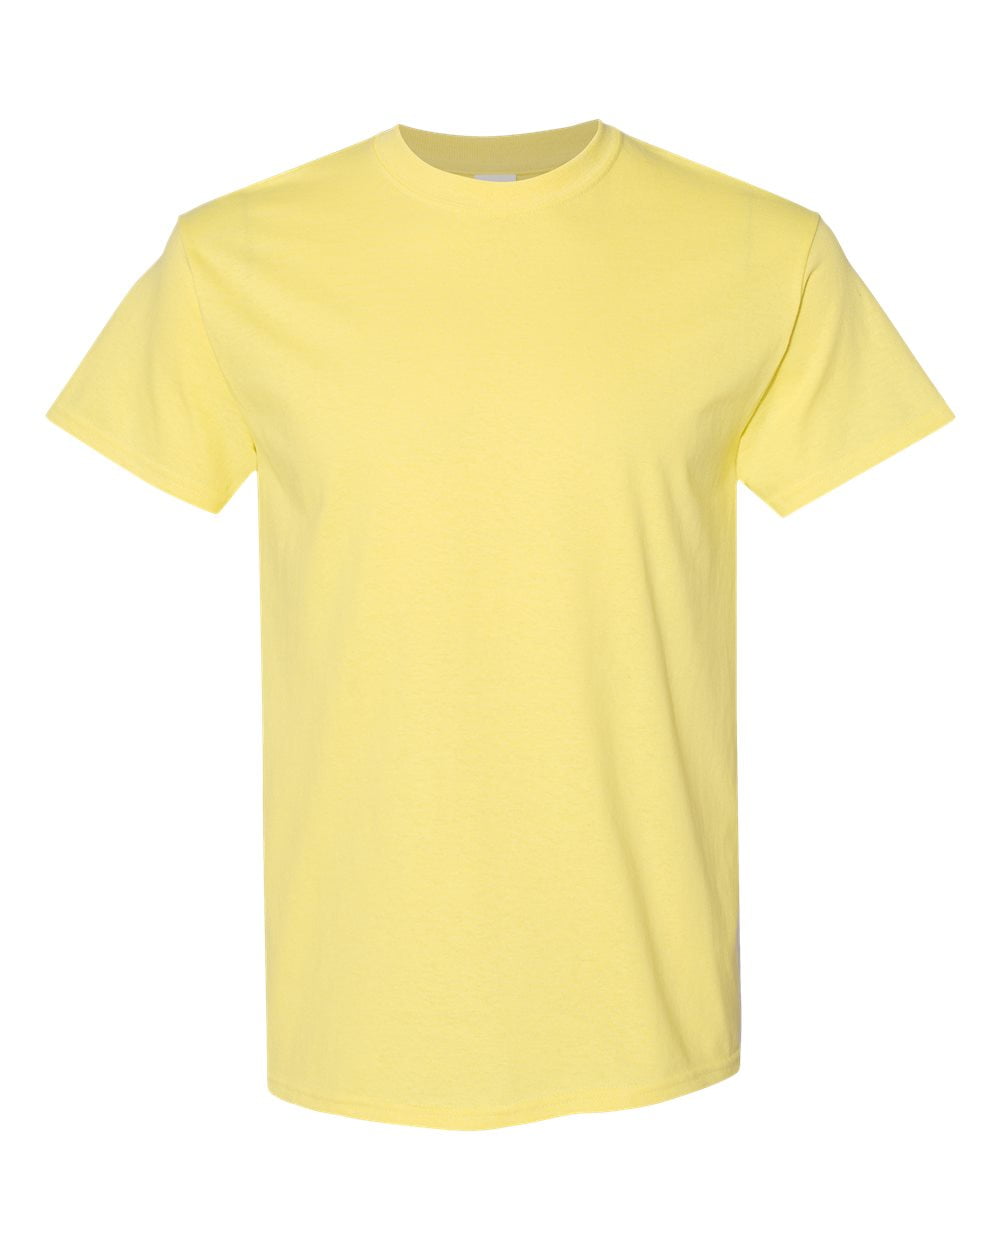 Men Heavy Cotton Multi Colors T-Shirt Color Cornsilk 5X-Large Size ...